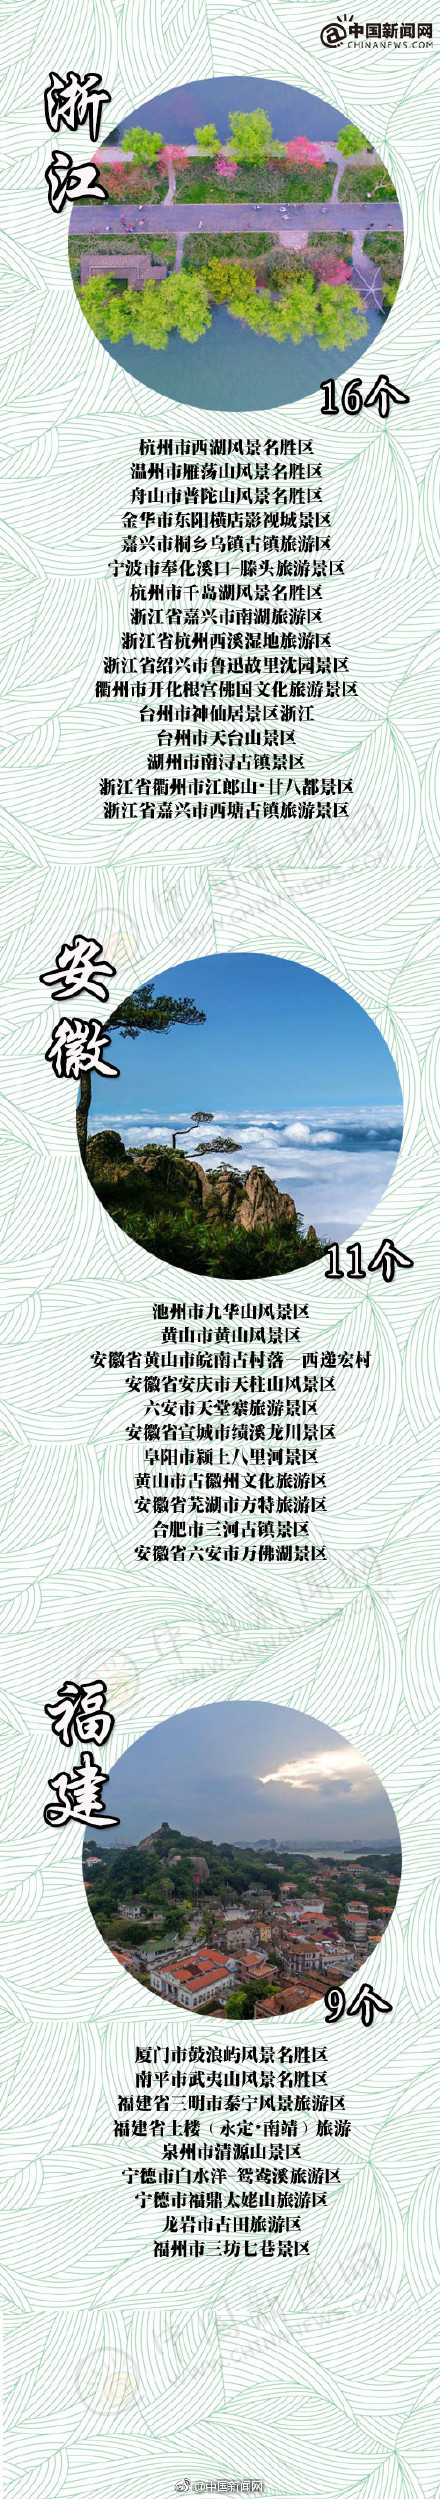 中国5a旅游景区名单2018最新 11家4A景区被摘牌